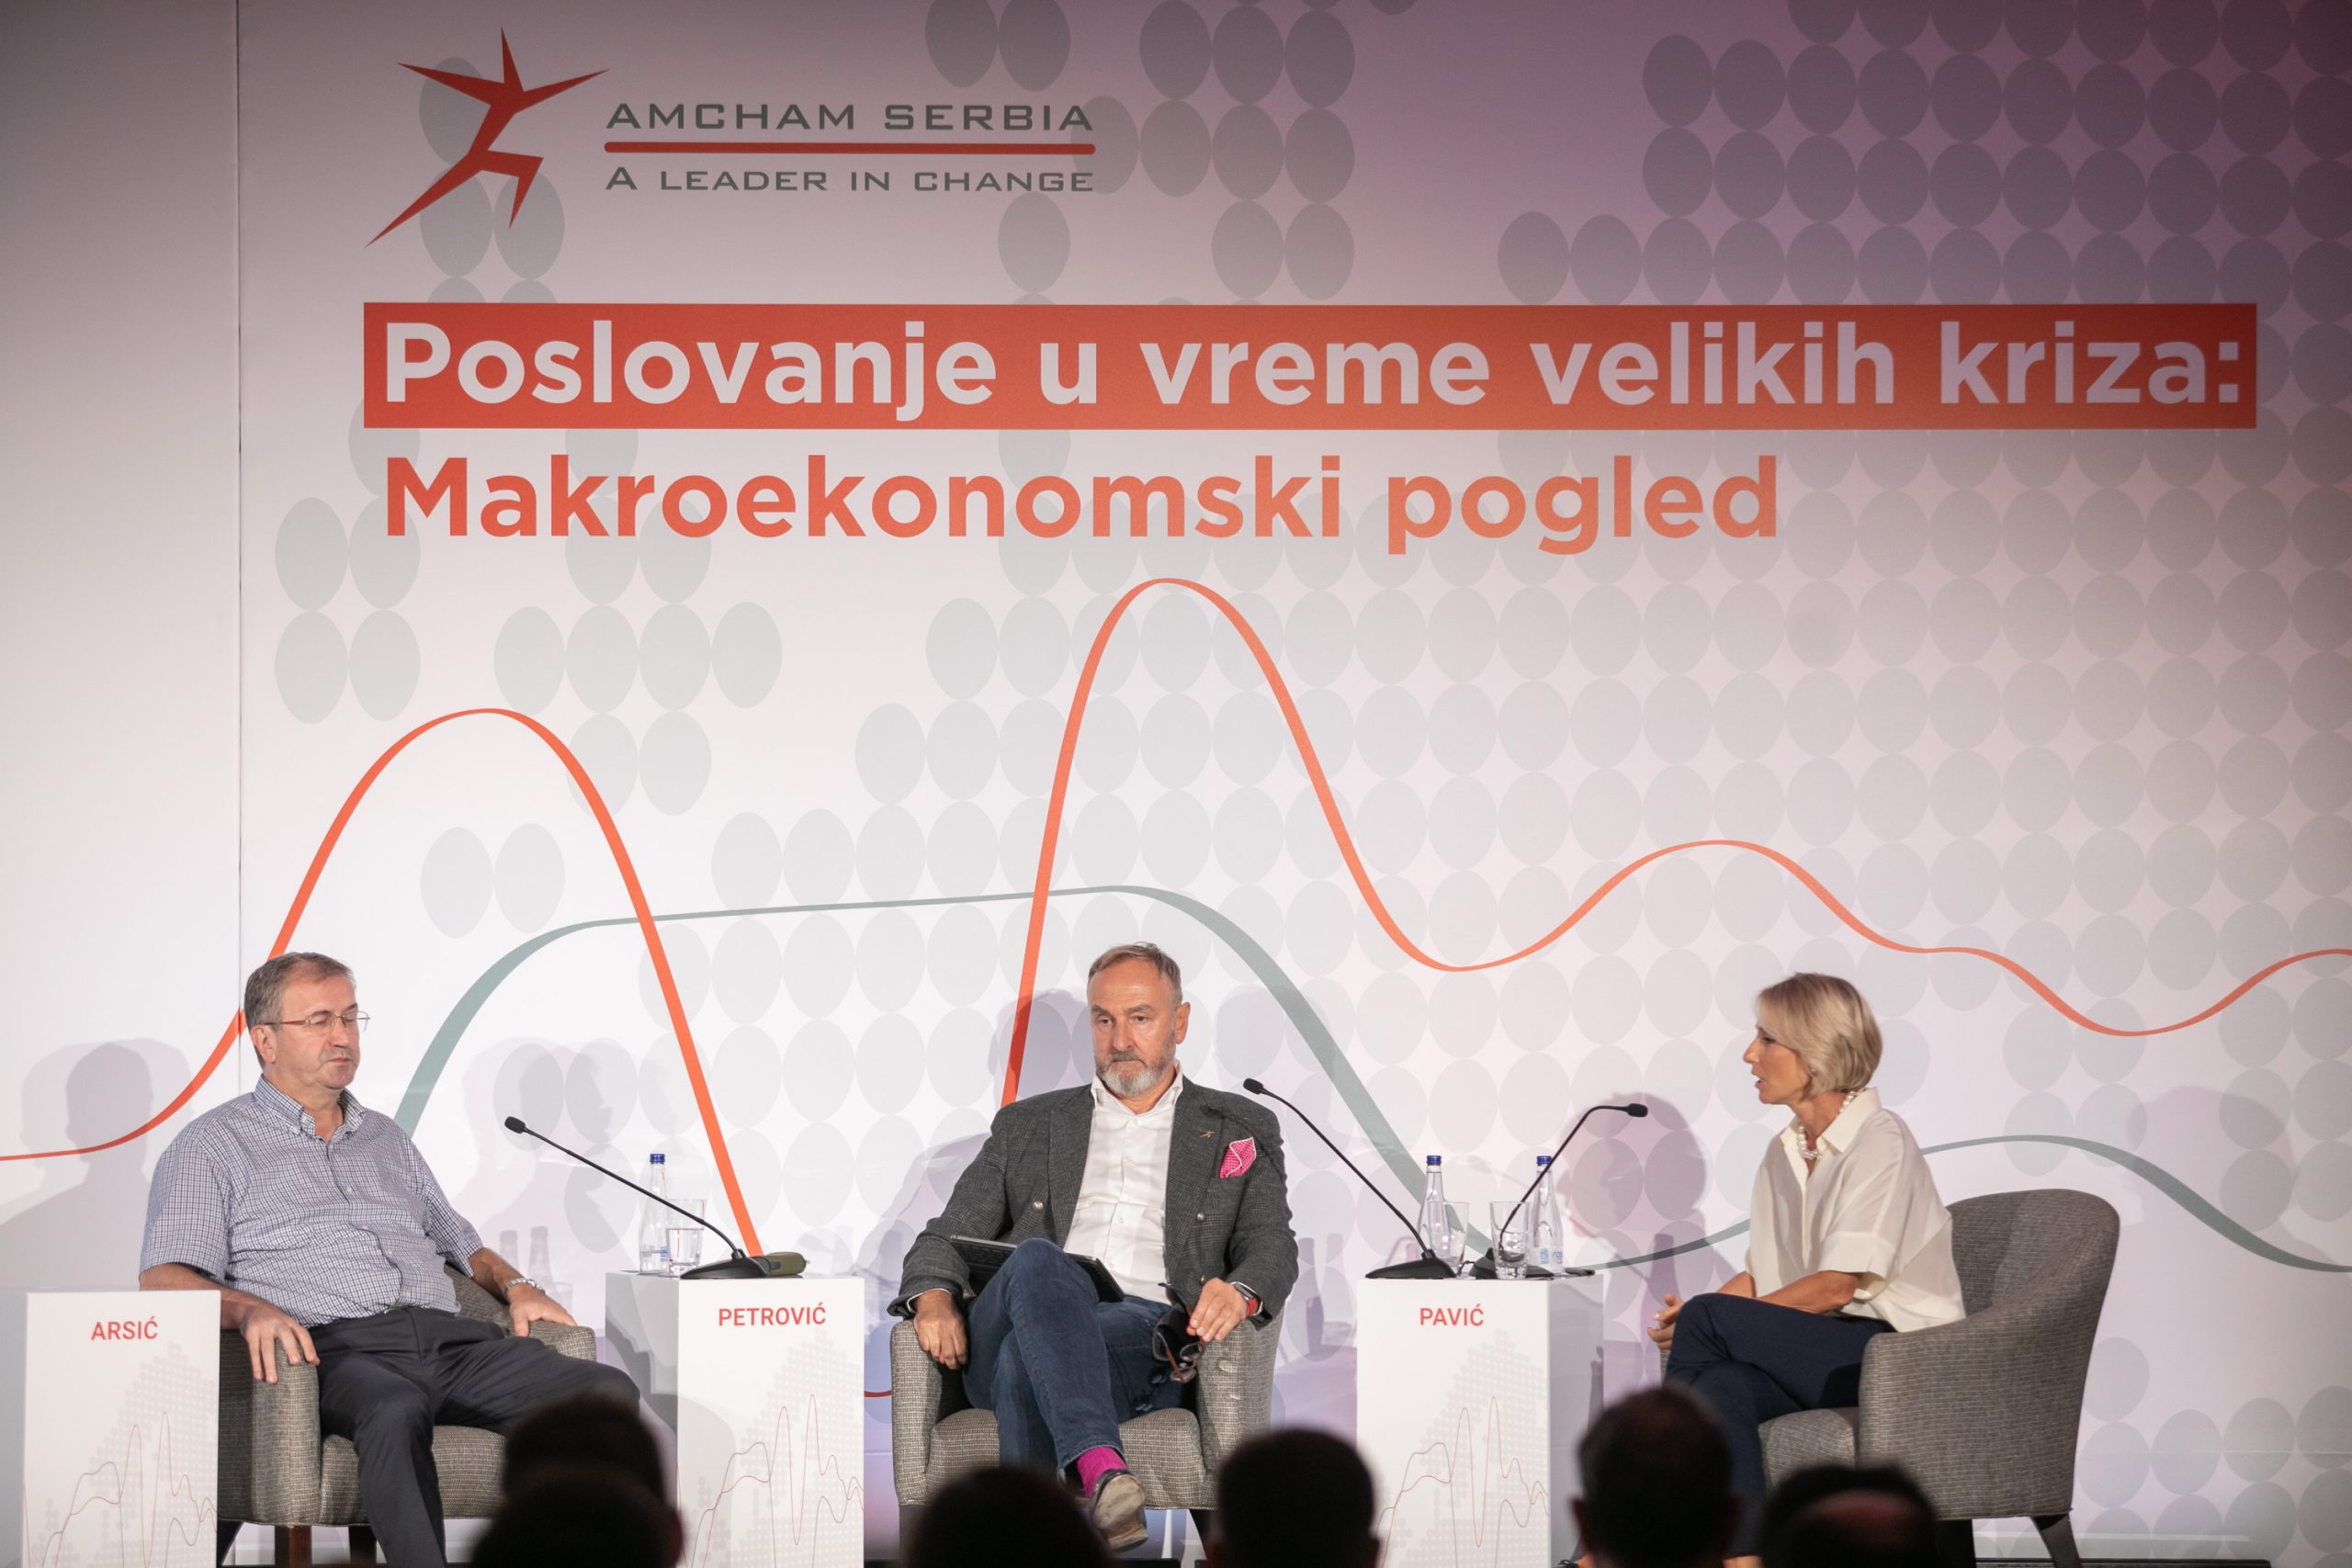 Učesnici panela prof. Milojko Arsić i Zoran Petrović sa moderatorkom Amalijom Pavić